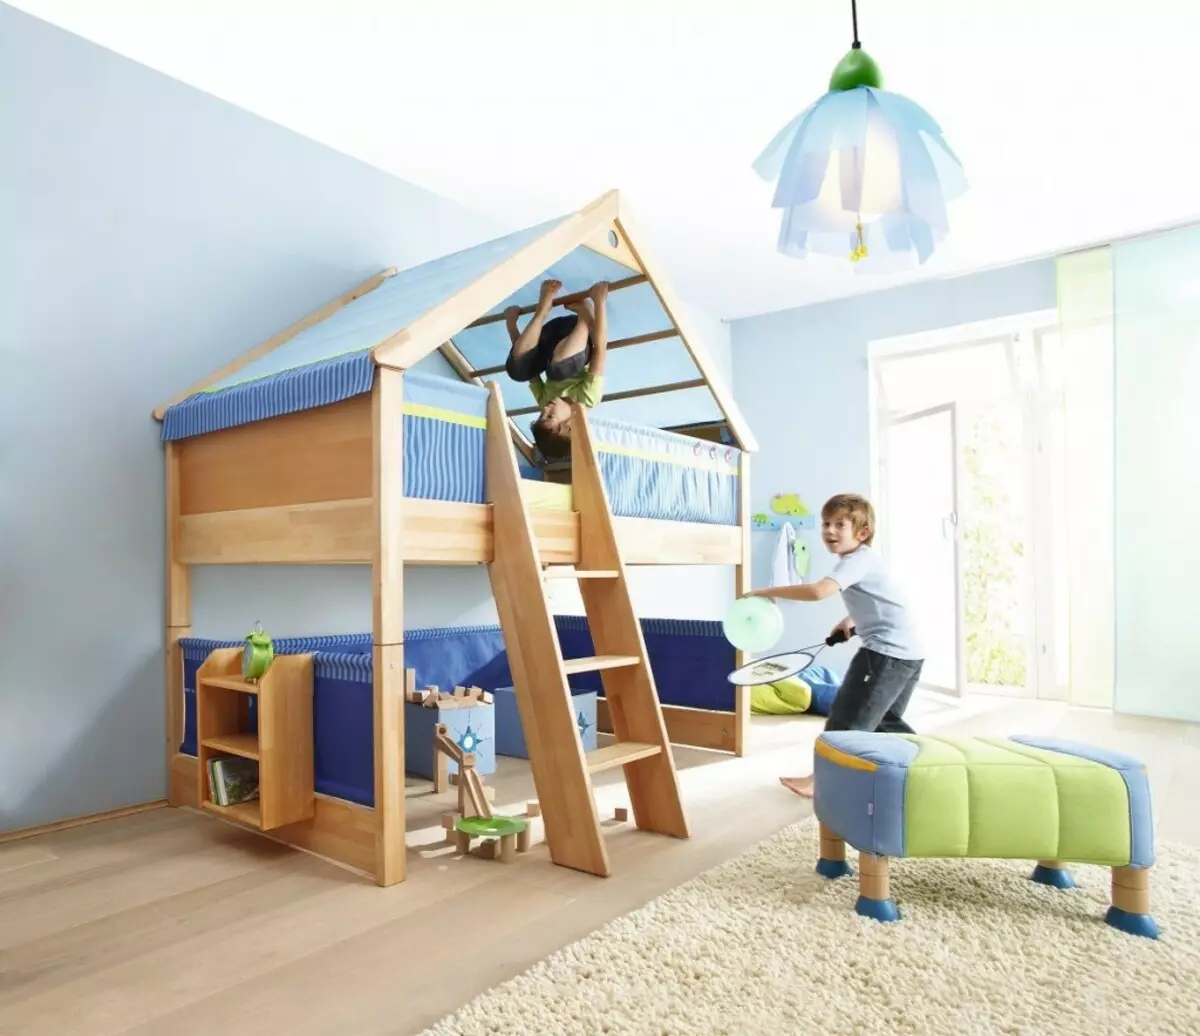 Кућа на дрвету за дете у соби: Да ли је то могуће? И како?